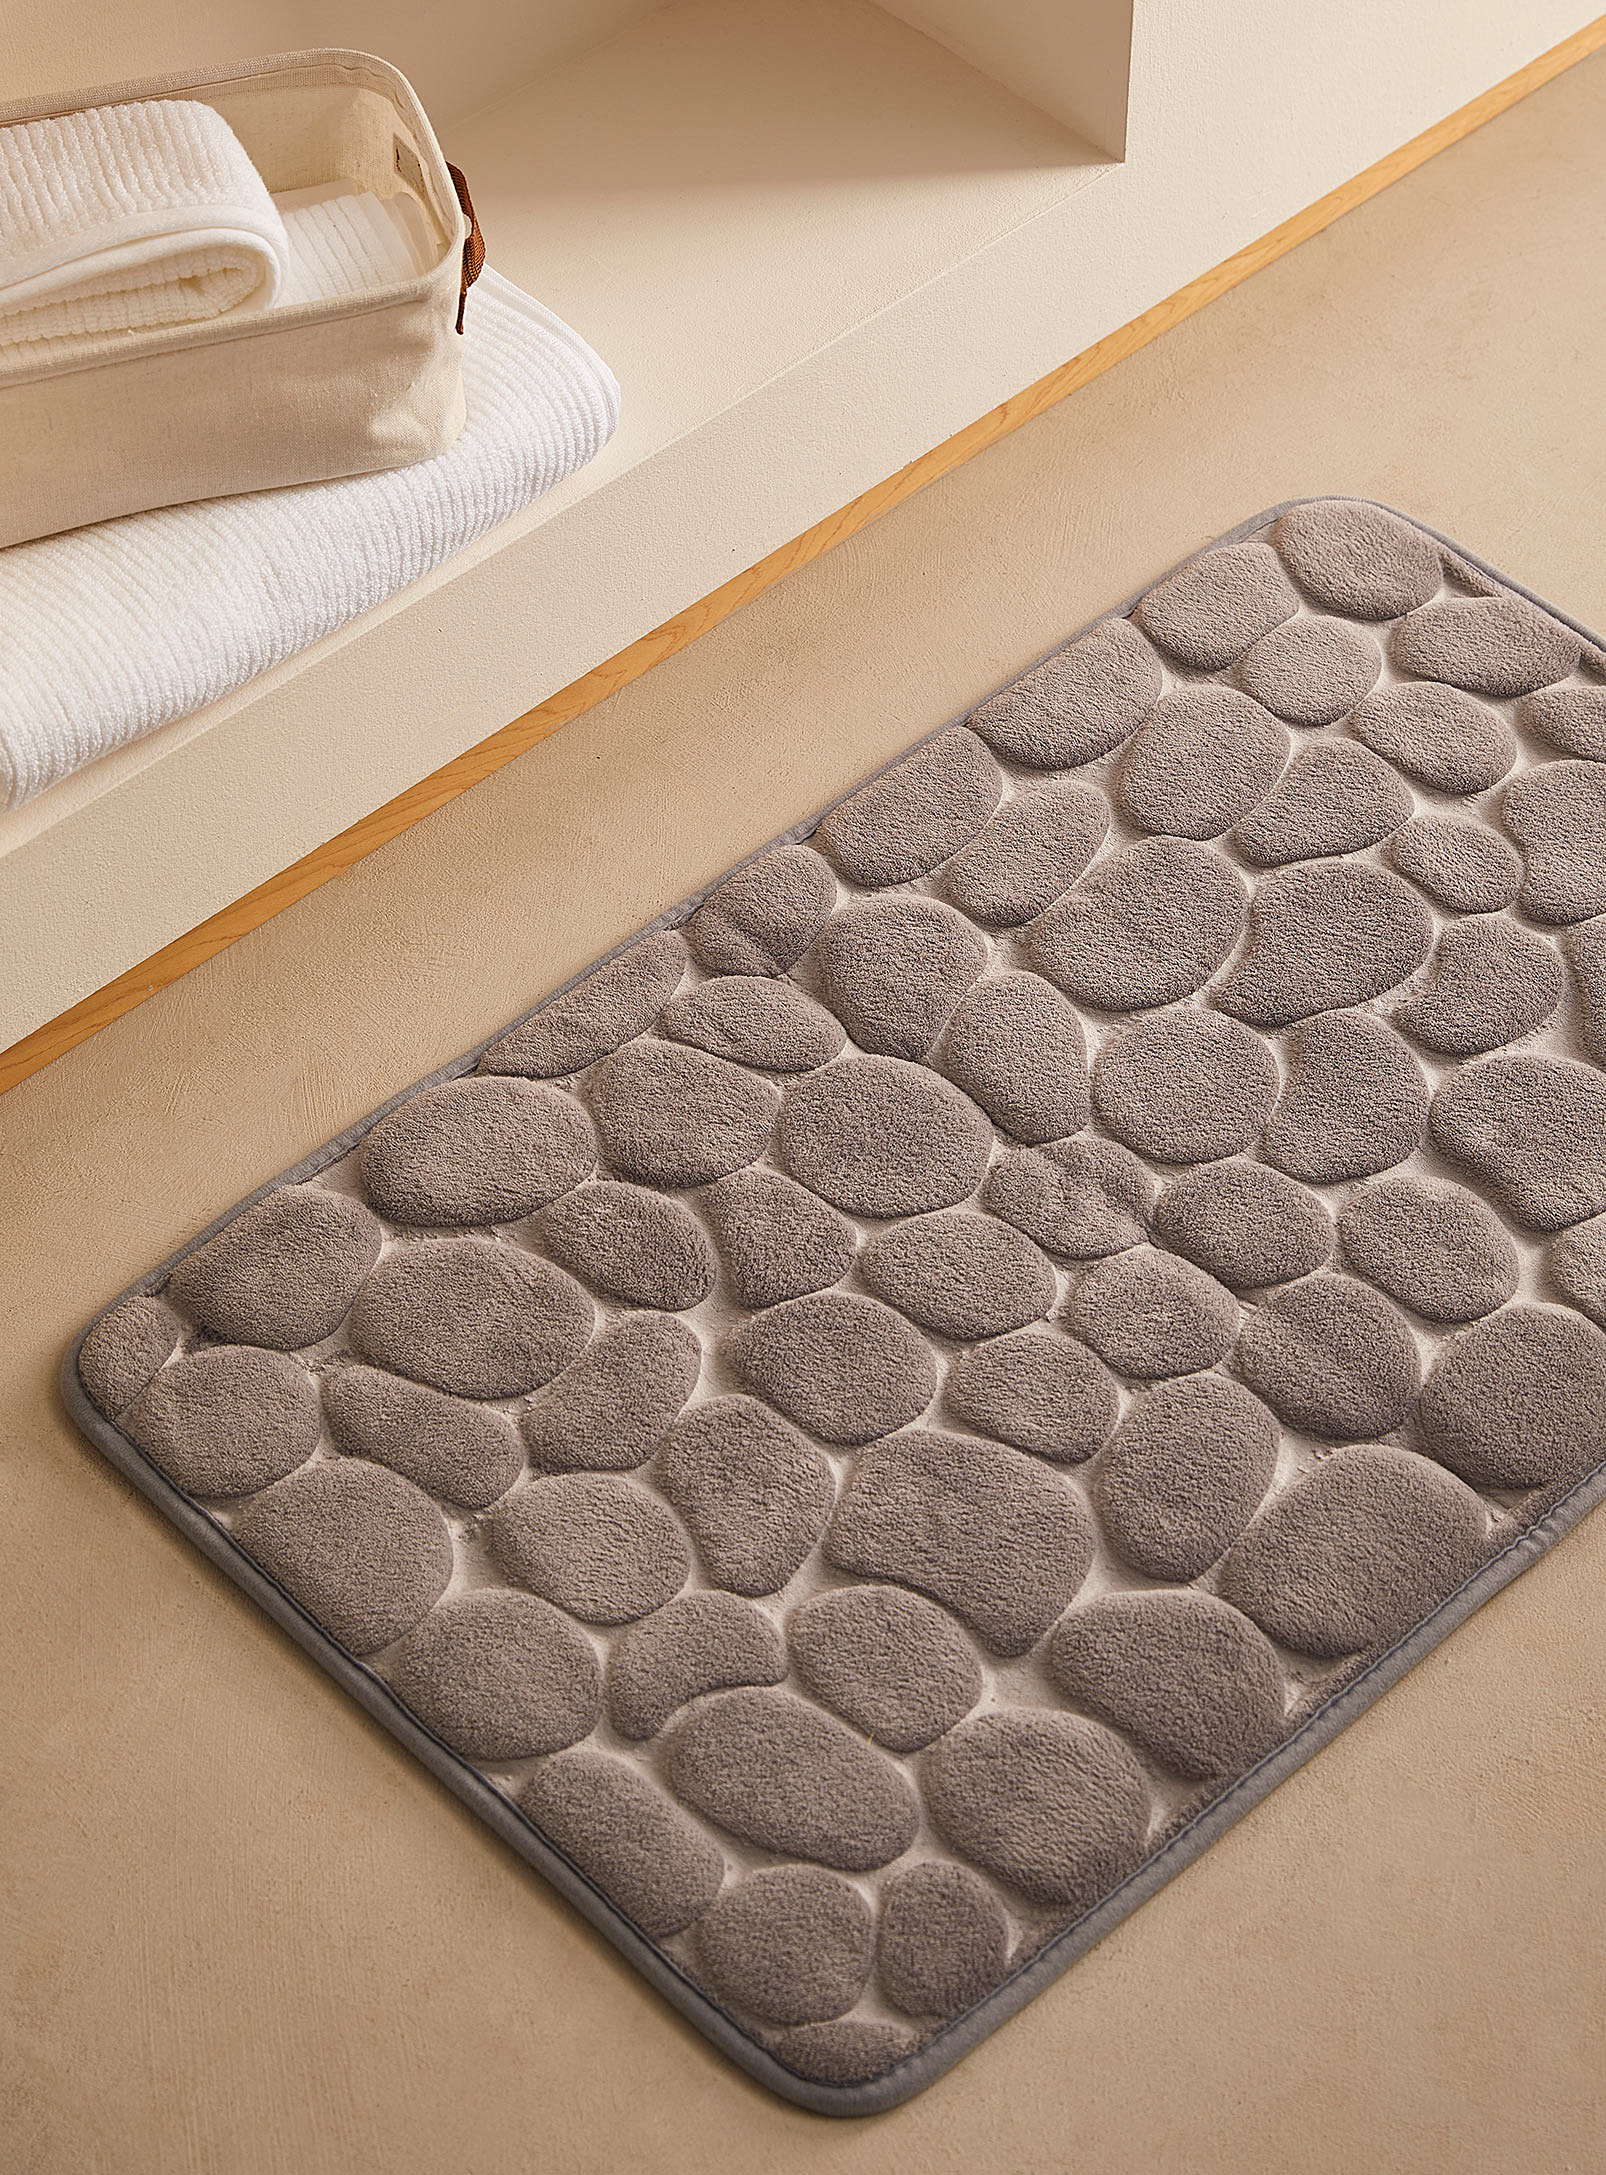 Simons Maison - Sea of pebbles bath mat 50 x 80 cm